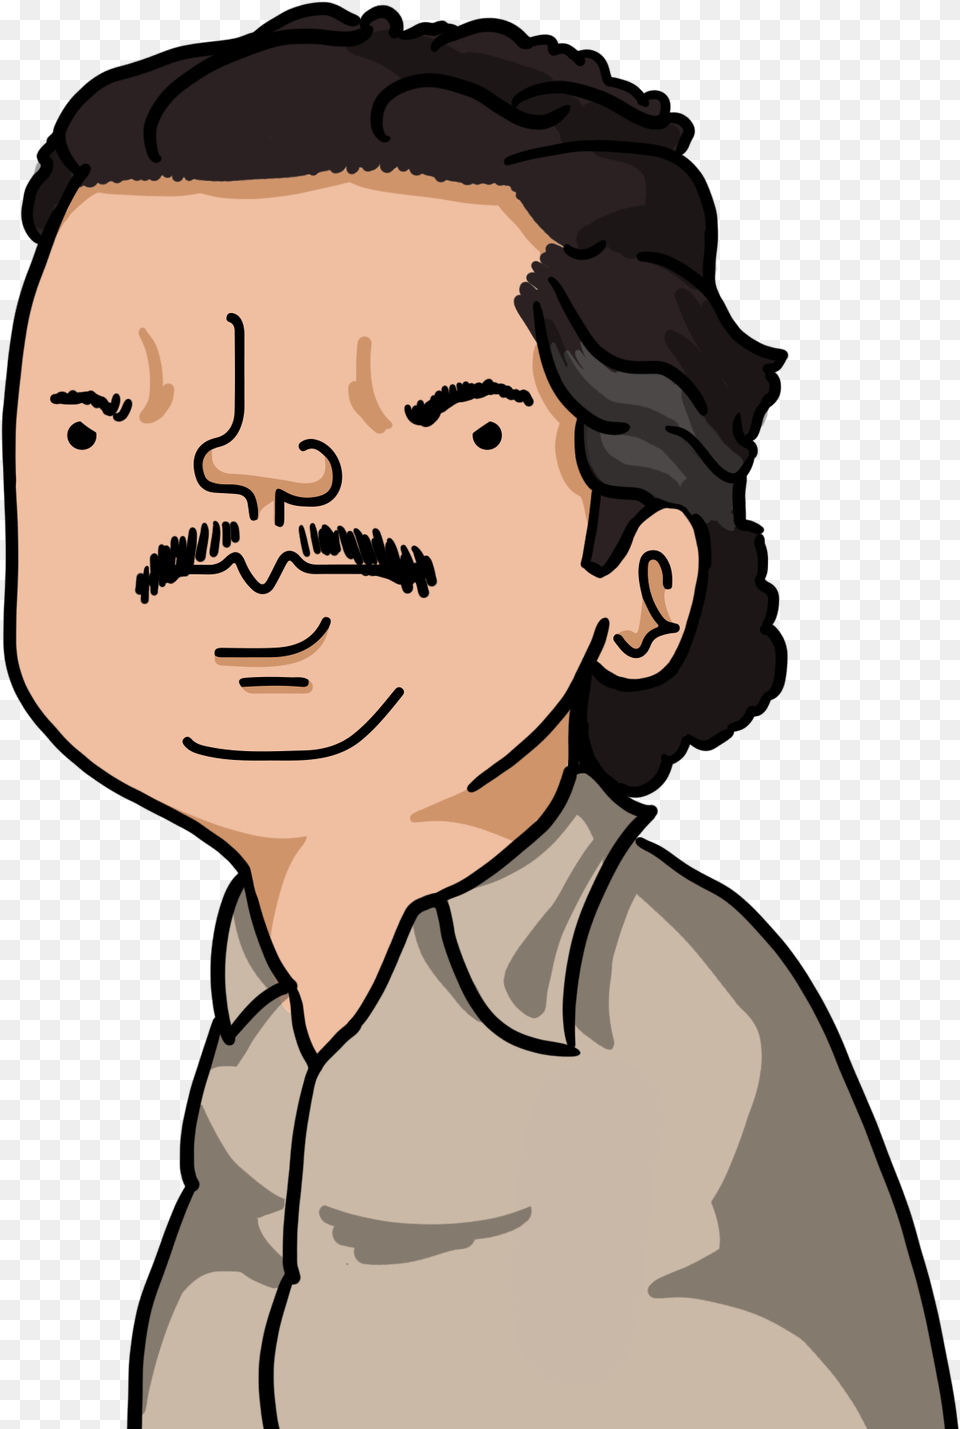 Wankul Pablo Escobar, Portrait, Photography, Face, Head Png Image